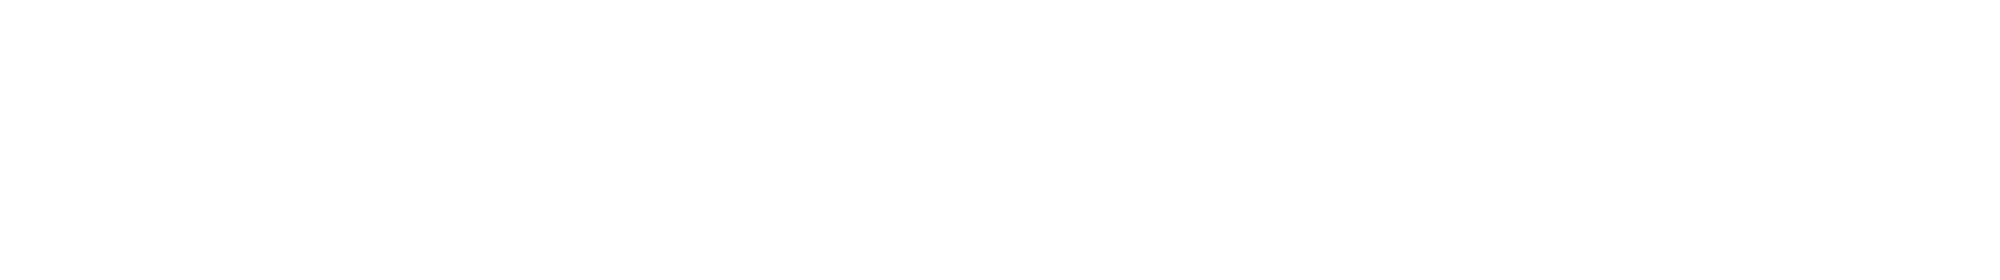 northwest bank logo